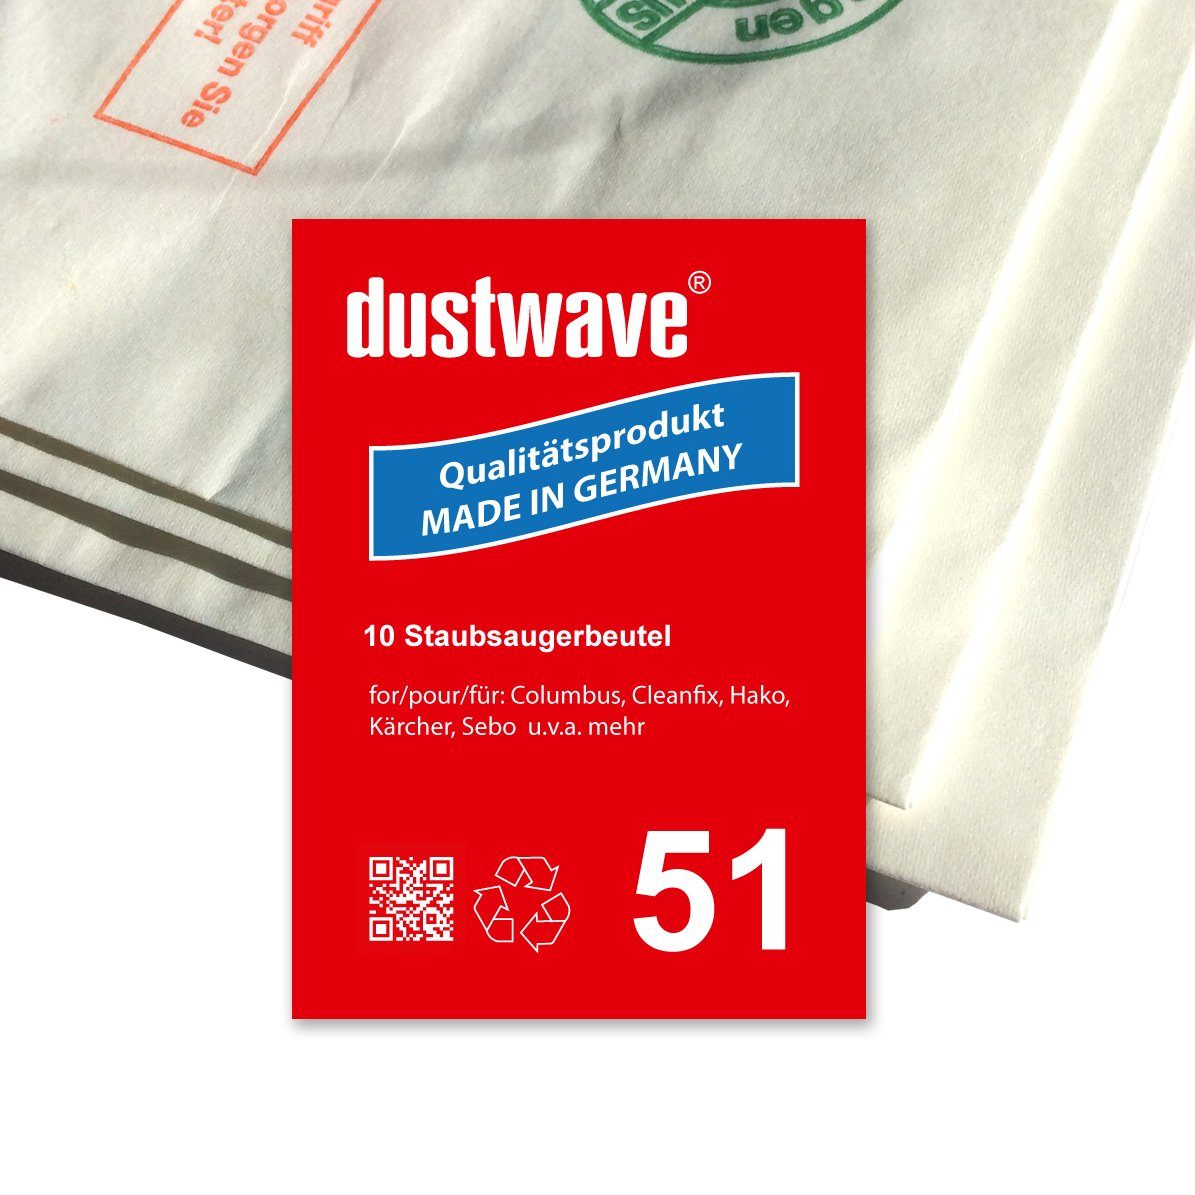 Dustwave Staubsaugerbeutel Sparpack, passend für Columbus BS 360 / BS360, 10 St., Sparpack, 10 Staubsaugerbeutel + 1 Hepa-Filter (ca. 15x15cm - zuschneidbar)